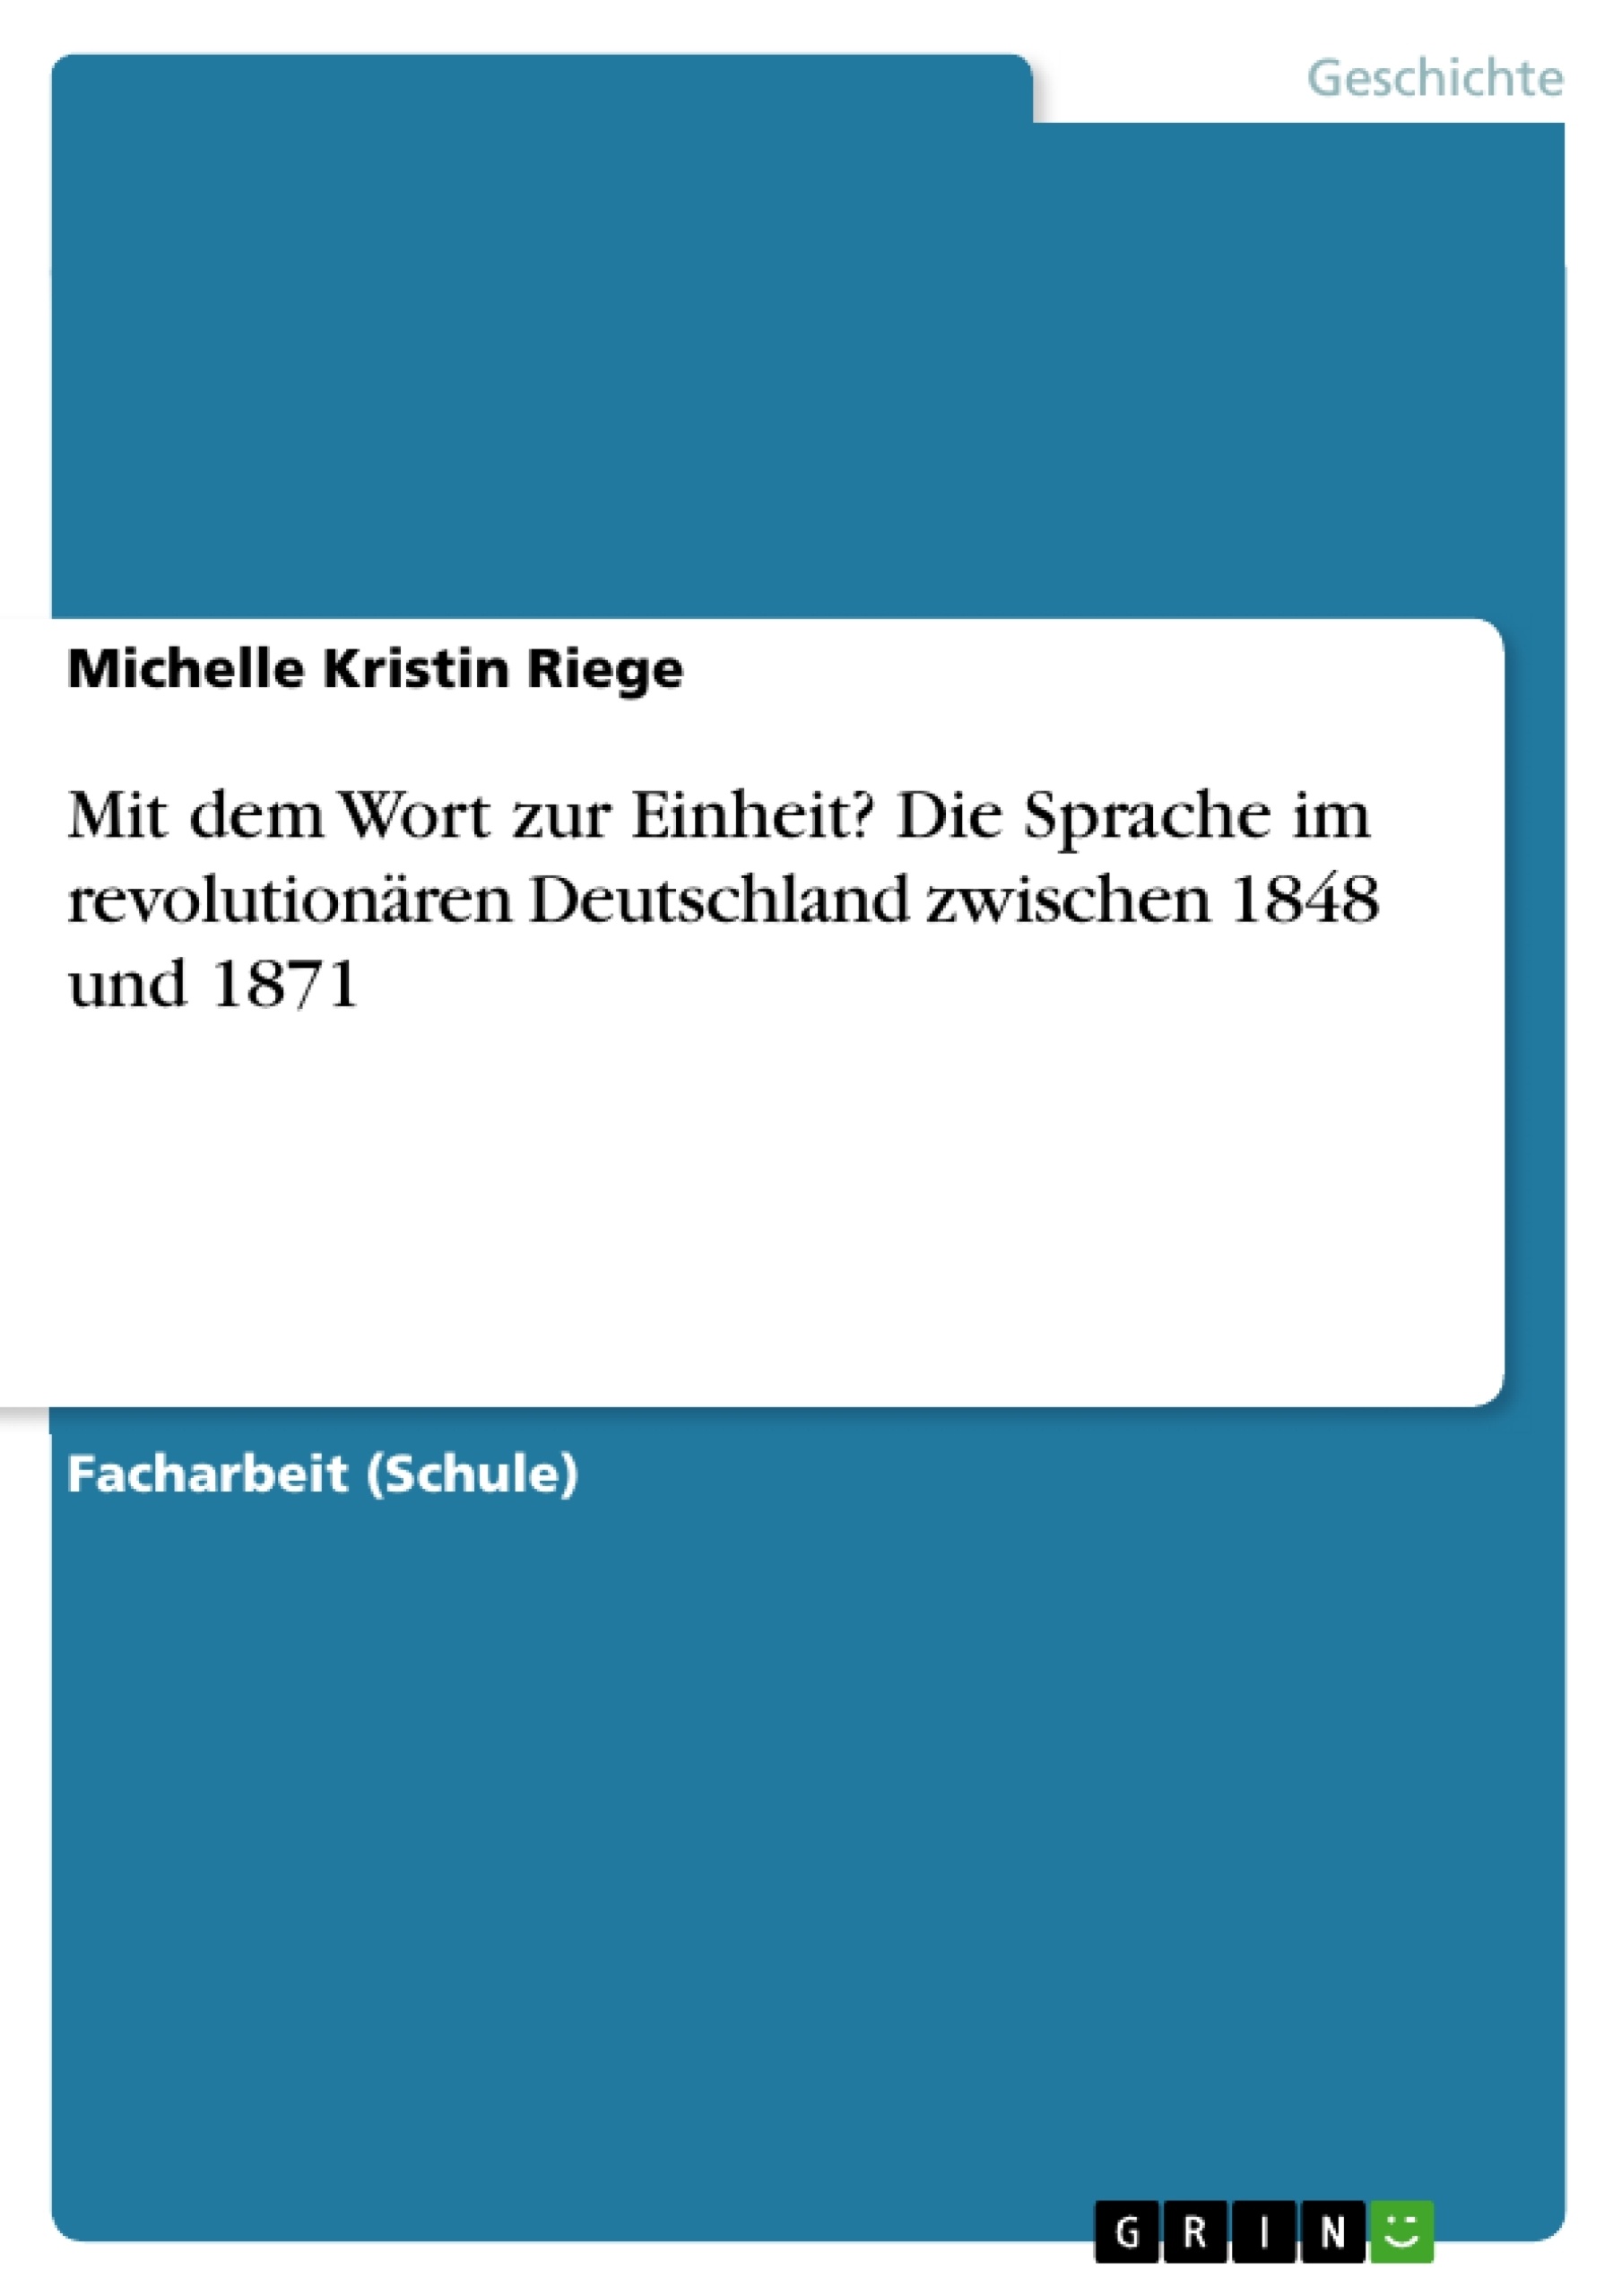 Título: Mit dem Wort zur Einheit? Die Sprache im revolutionären Deutschland zwischen 1848 und 1871